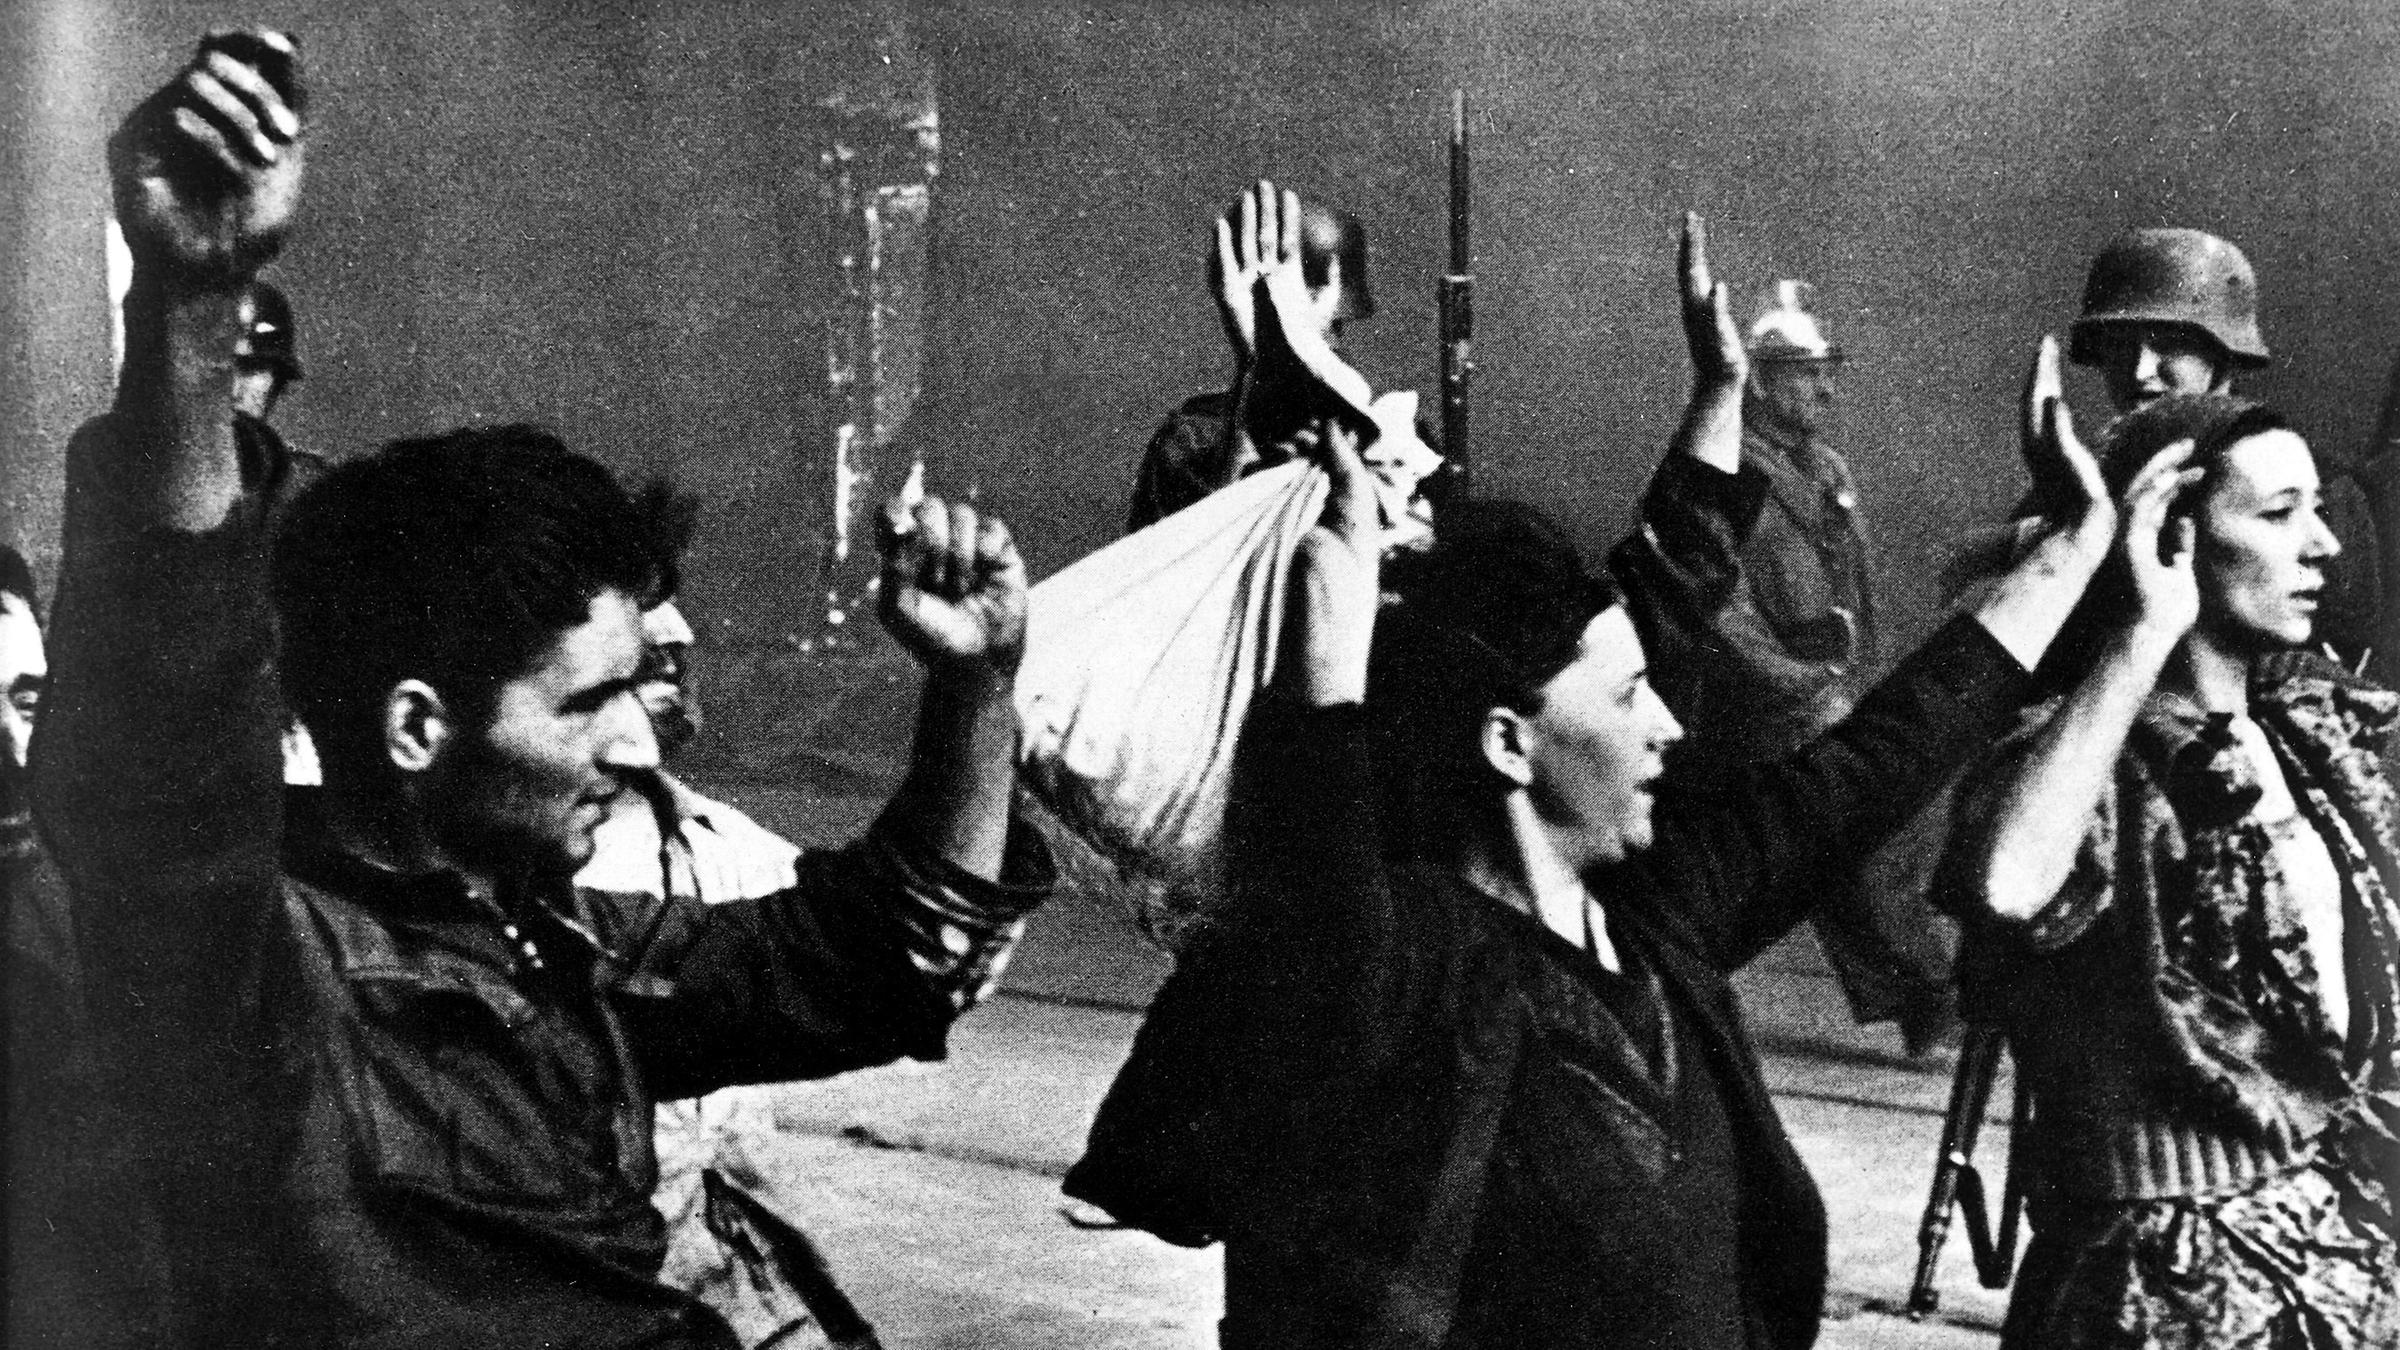 Historische Aufnahme von einem Mann und zwei Frauen mit erhobenen Armen...</p>

                        <a href=